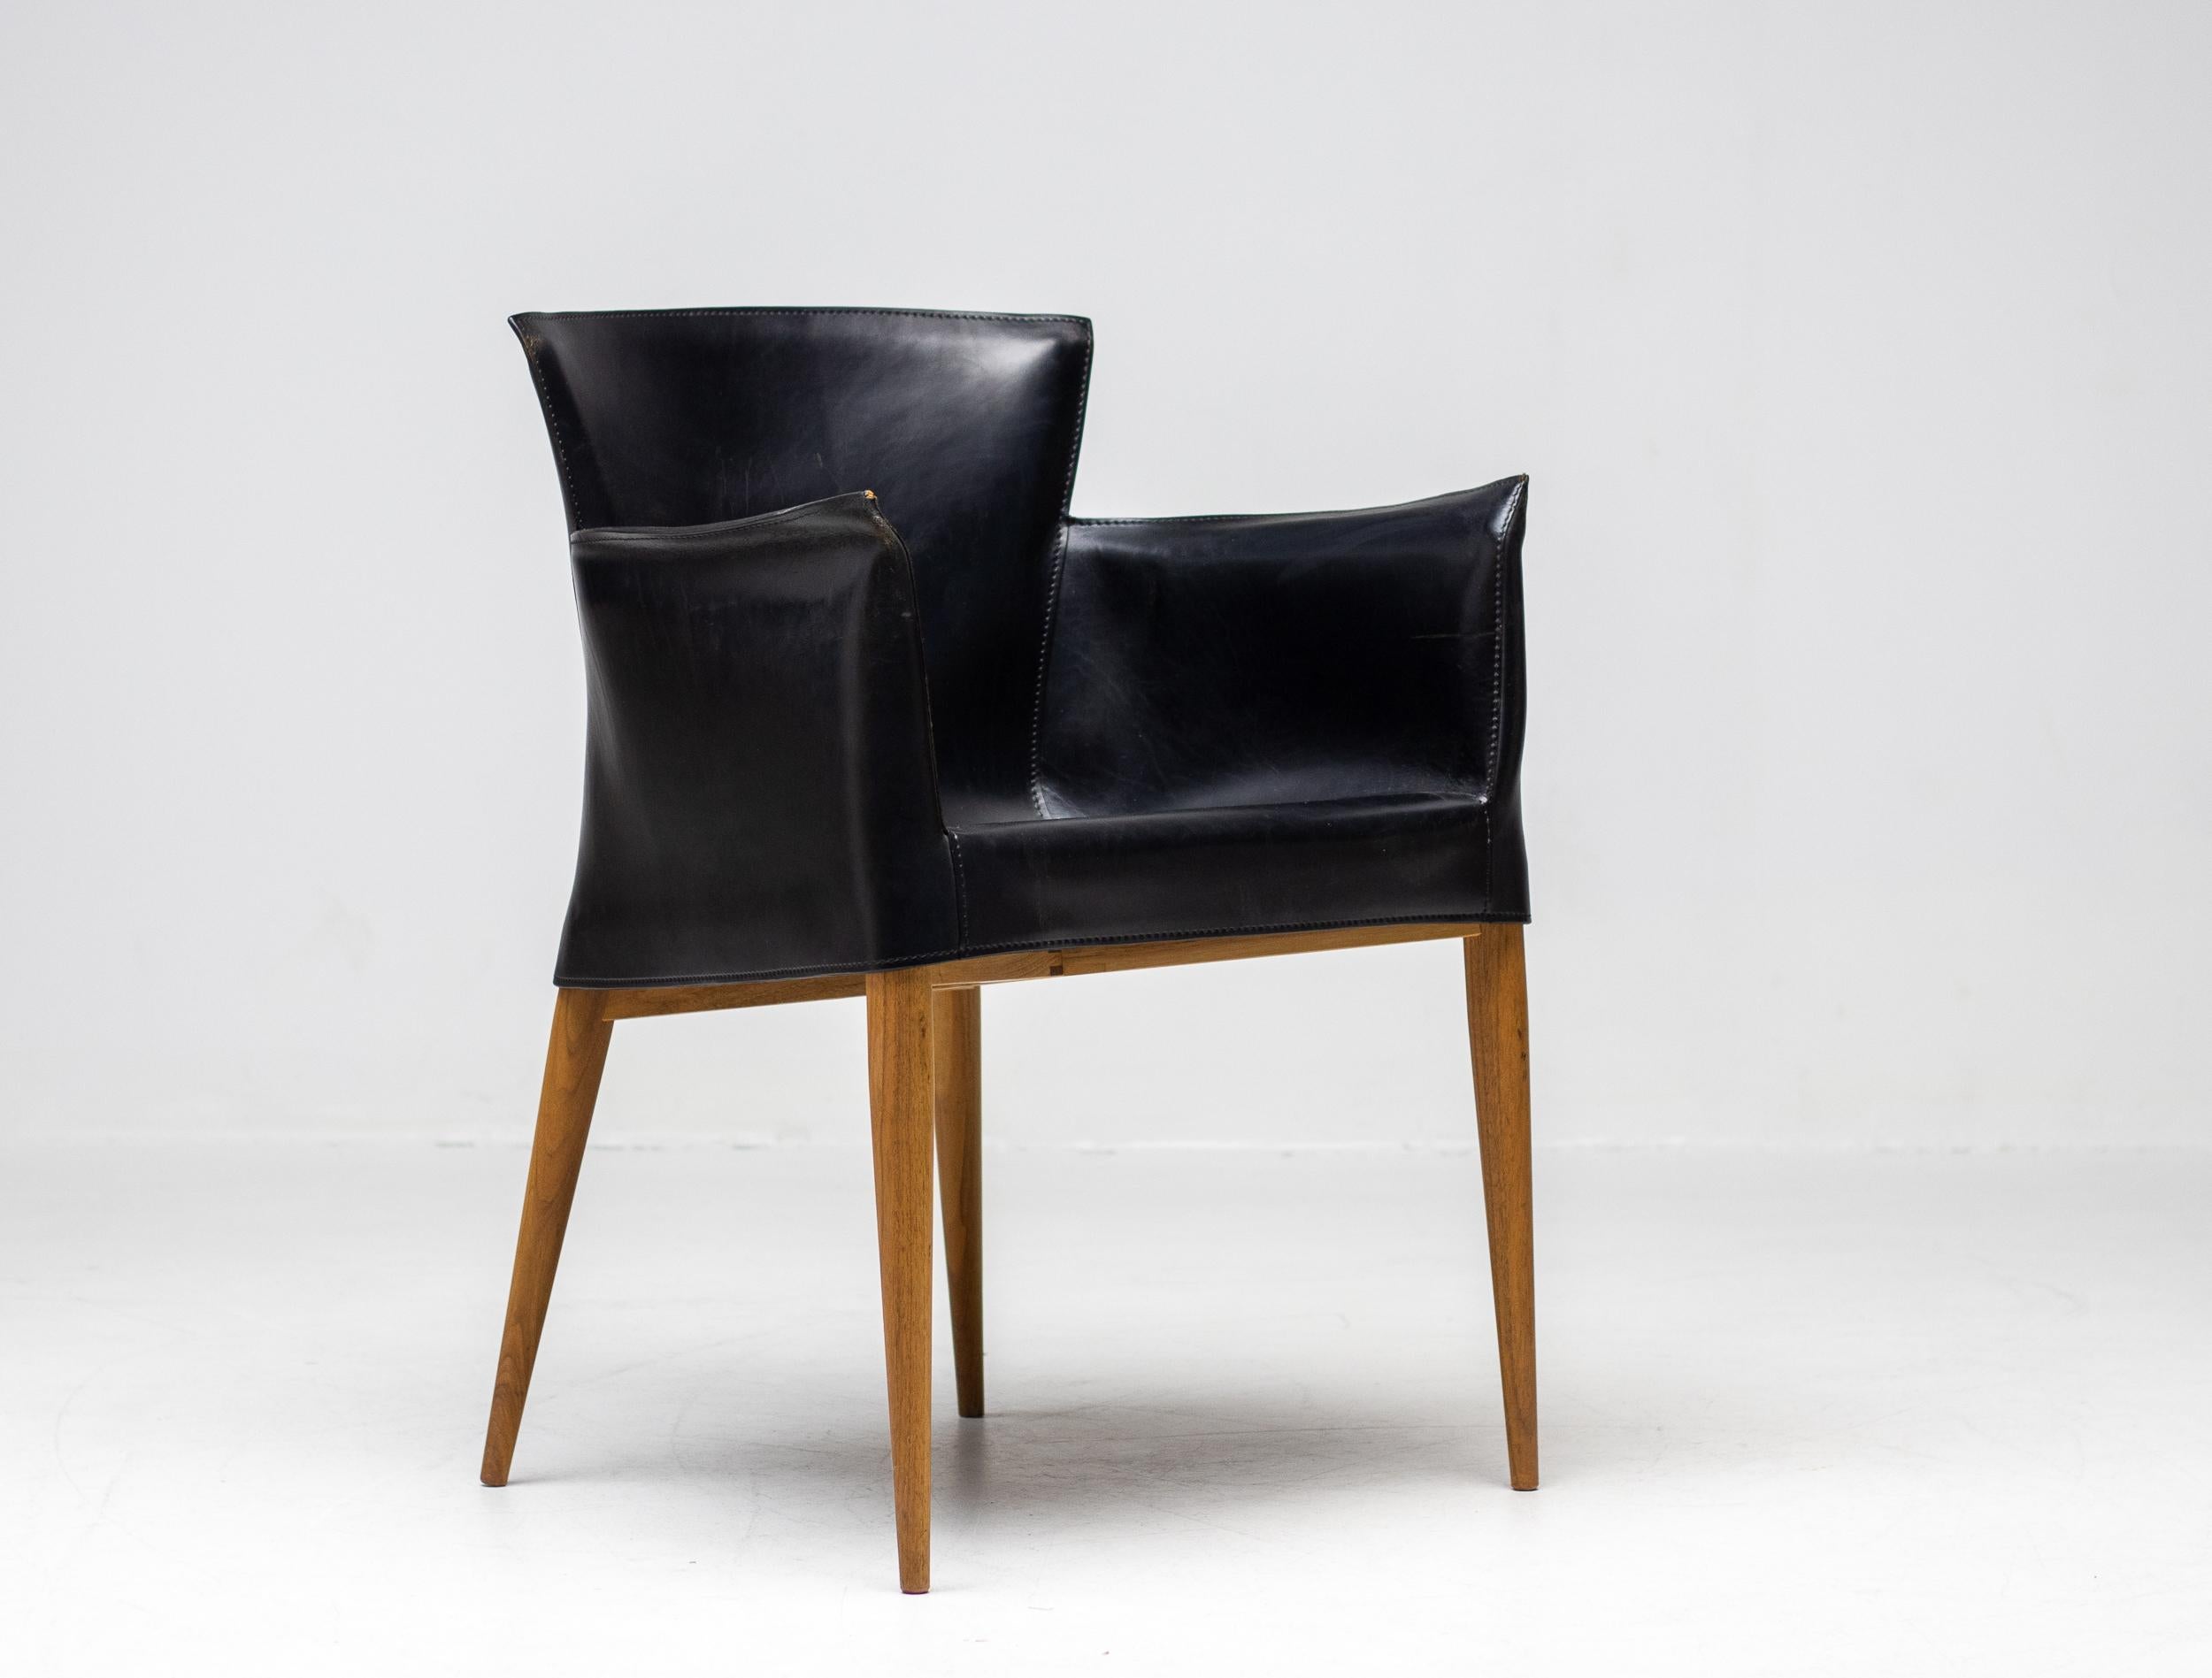 Rare fauteuil Carlo Bartoli for Matteo Grassi Vela en cuir italien noir, fabriqué en Italie, vers 1980.
Chaise haut de gamme composée d'un revêtement en cuir cousu main enveloppant un cadre interne en noyer. 
Le design de cette chaise s'inspire de